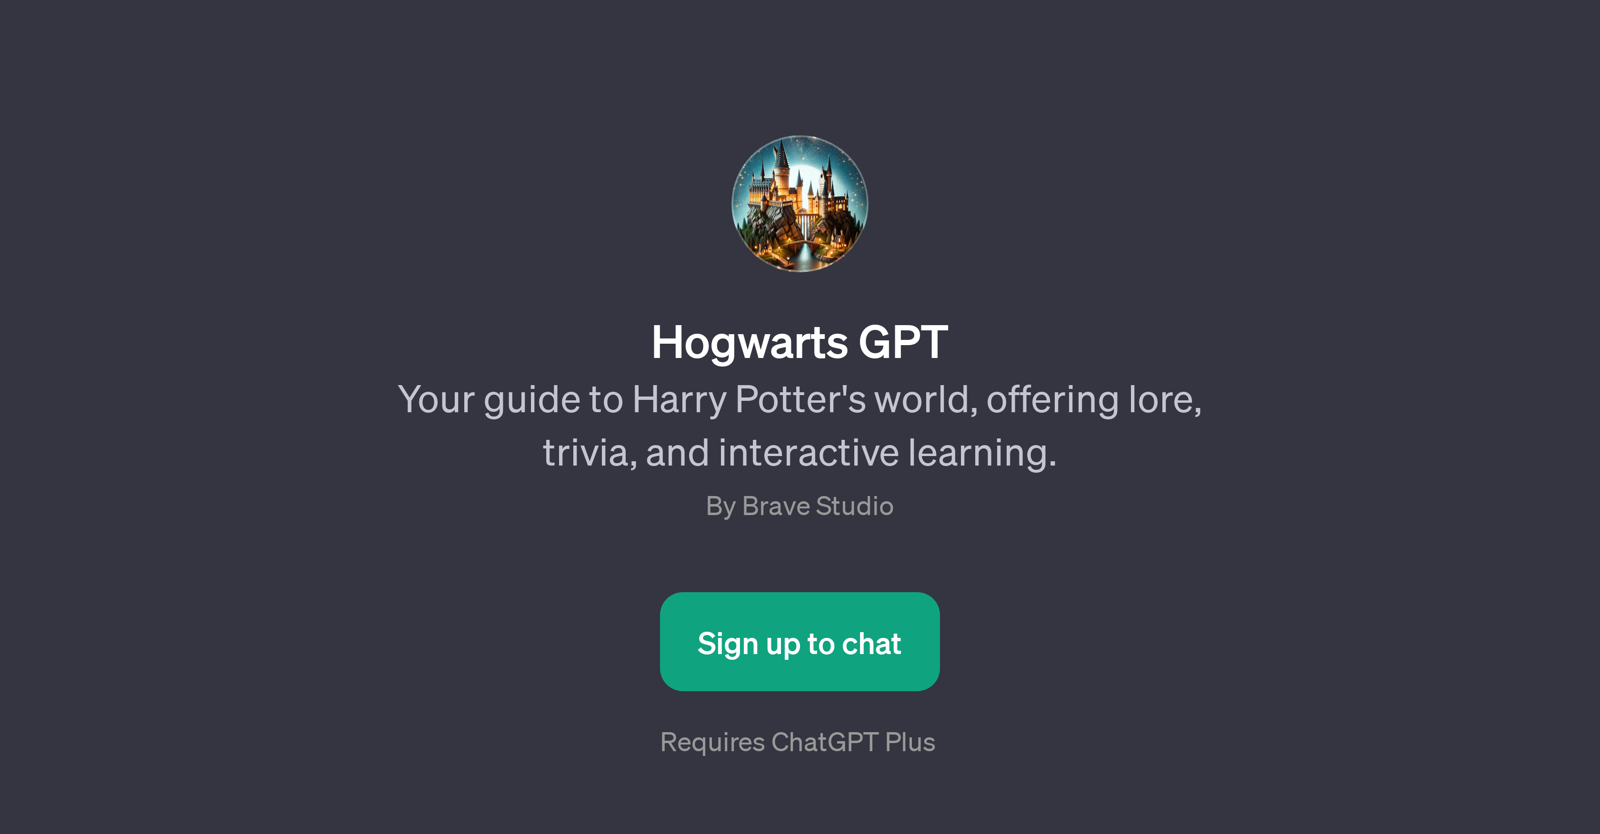 Hogwarts GPT website